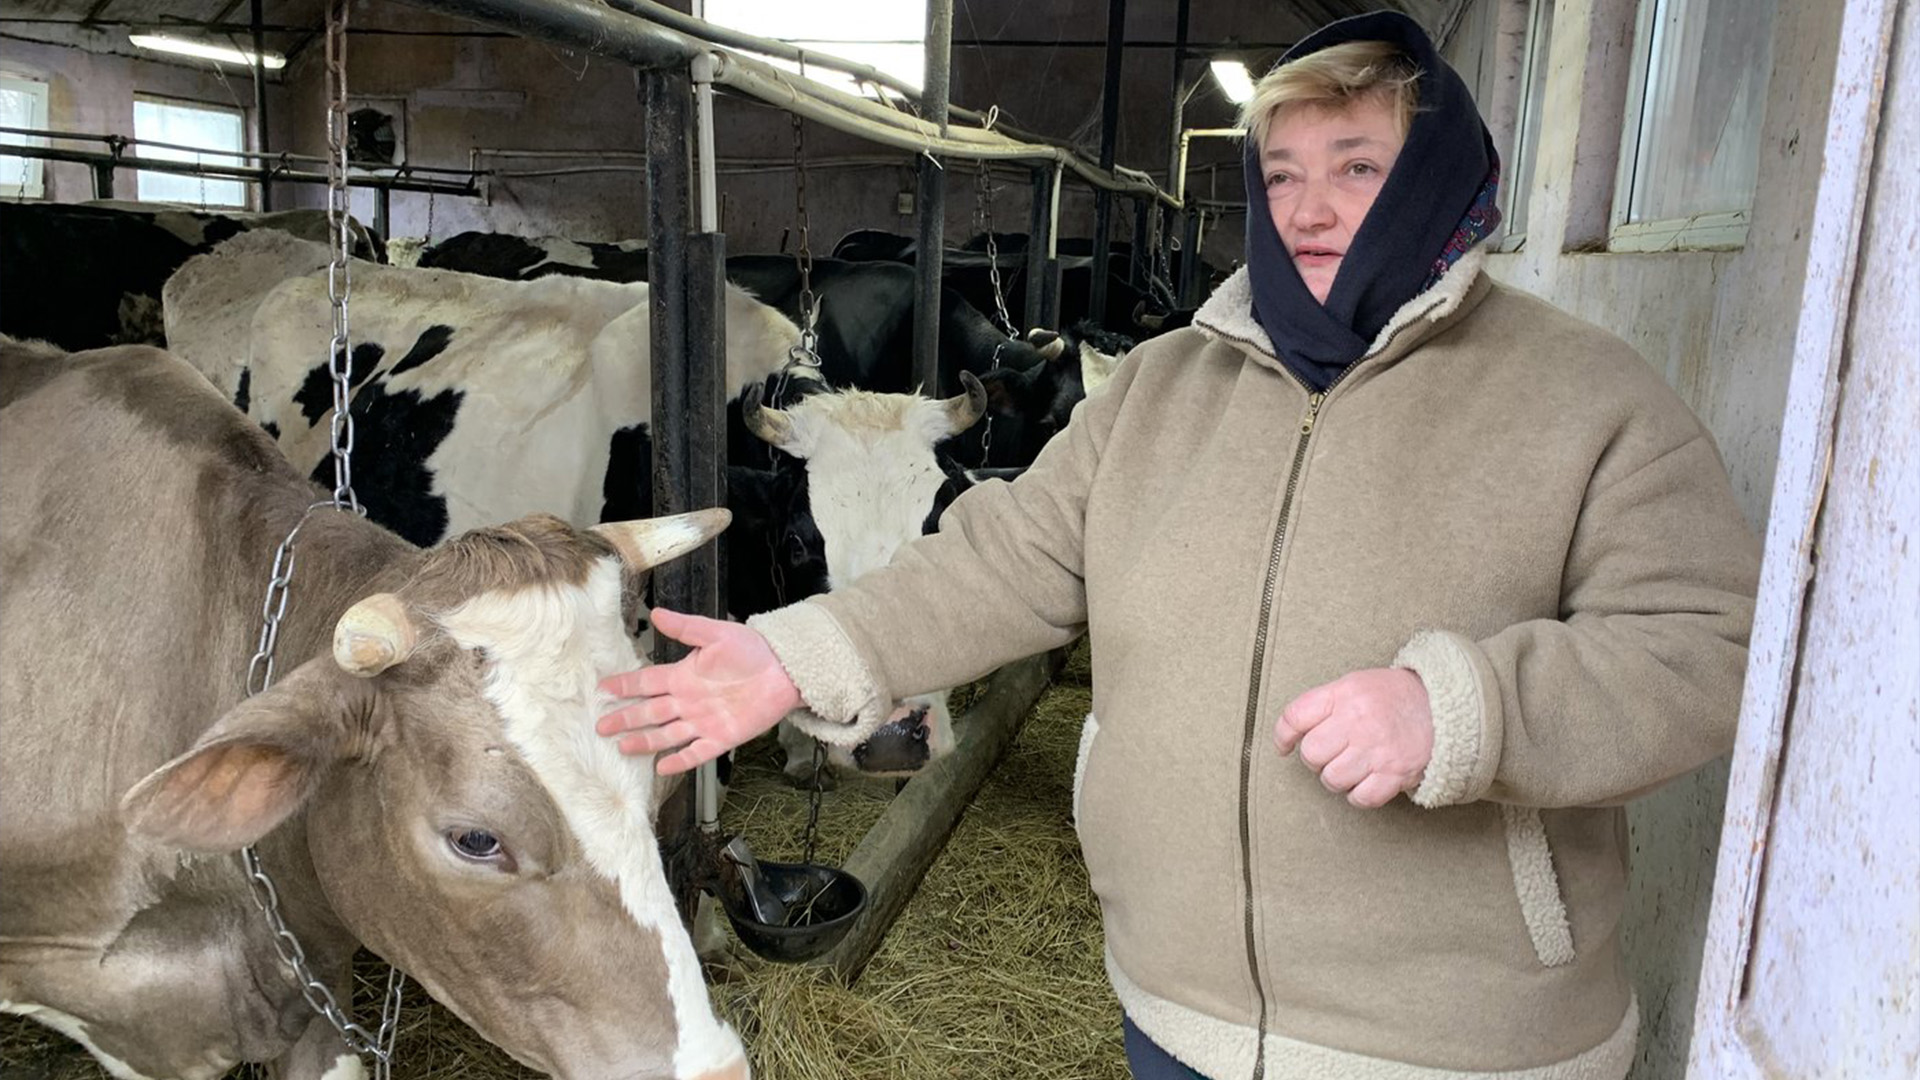 Lyuba Pastushok attribue son succès à la création dans sa communauté d'une coopérative inspirée d'Agropur, au Québec. En plus, une nouvelle usine laitière canadienne dans la région aidera probablement l'industrie locale à se développer encore plus.